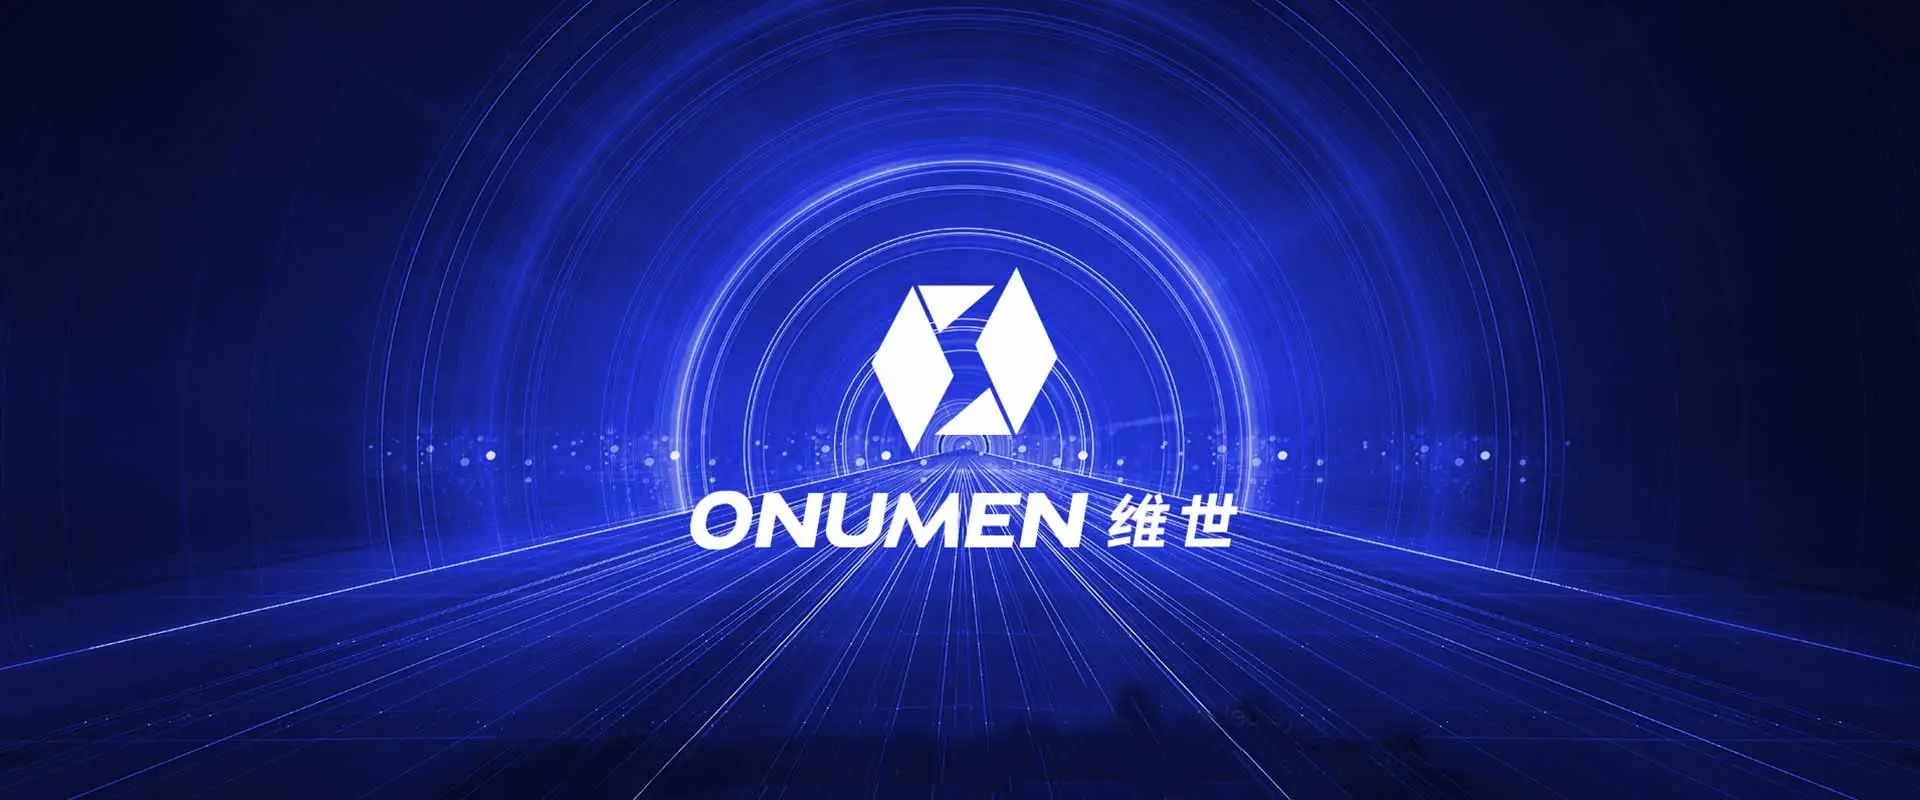 Onemen является мировым лидером в портативных и складных светодиодных видеосистемах